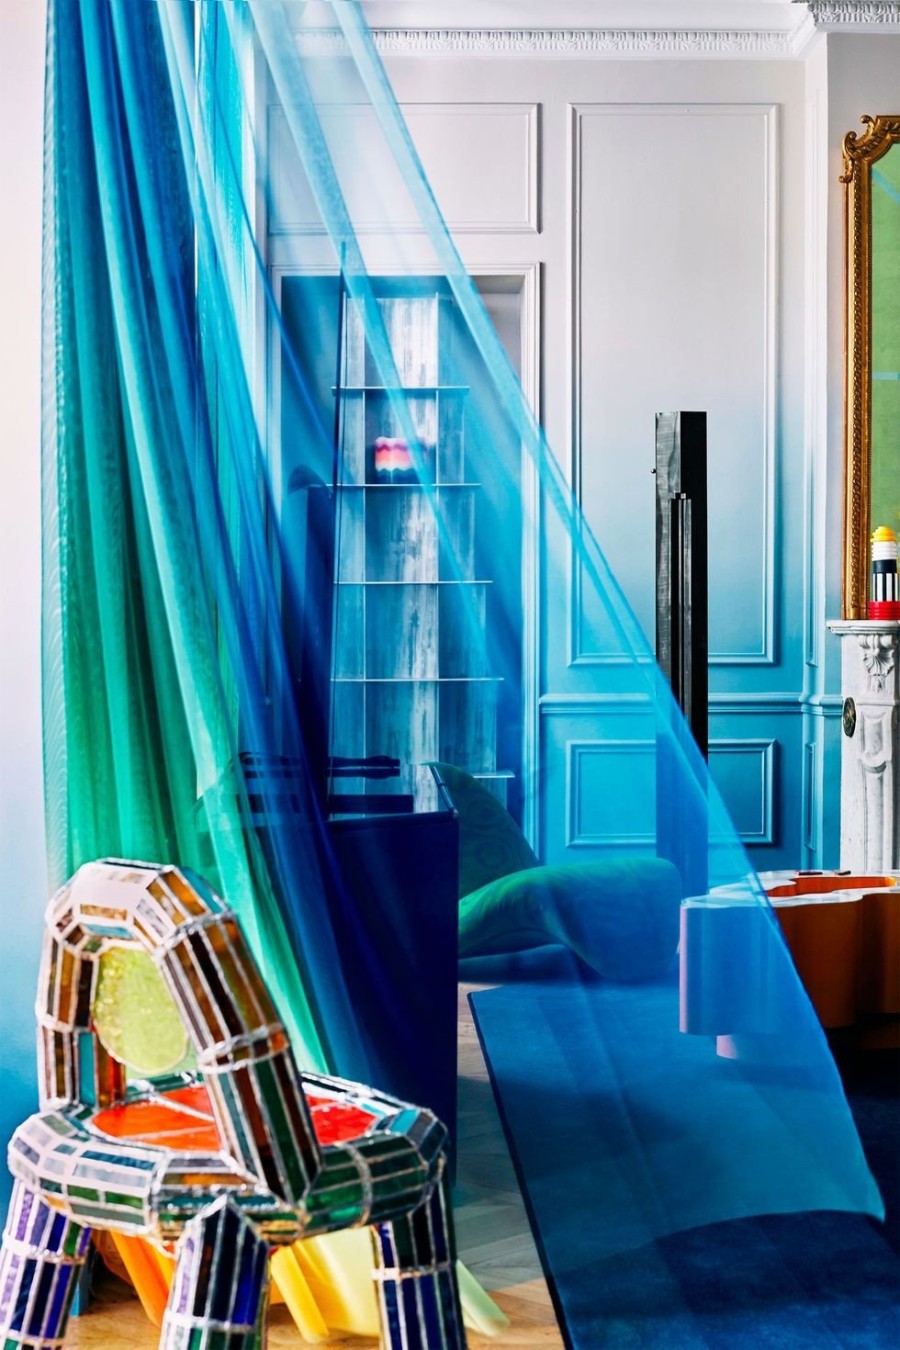 Σε ένα παριζιάνικο διαμέρισμα η κλασική Haussmannian αρχιτεκτονική κάνει εκκεντρικά παιχνίδια με τα χρώματα - Φωτογραφία 4